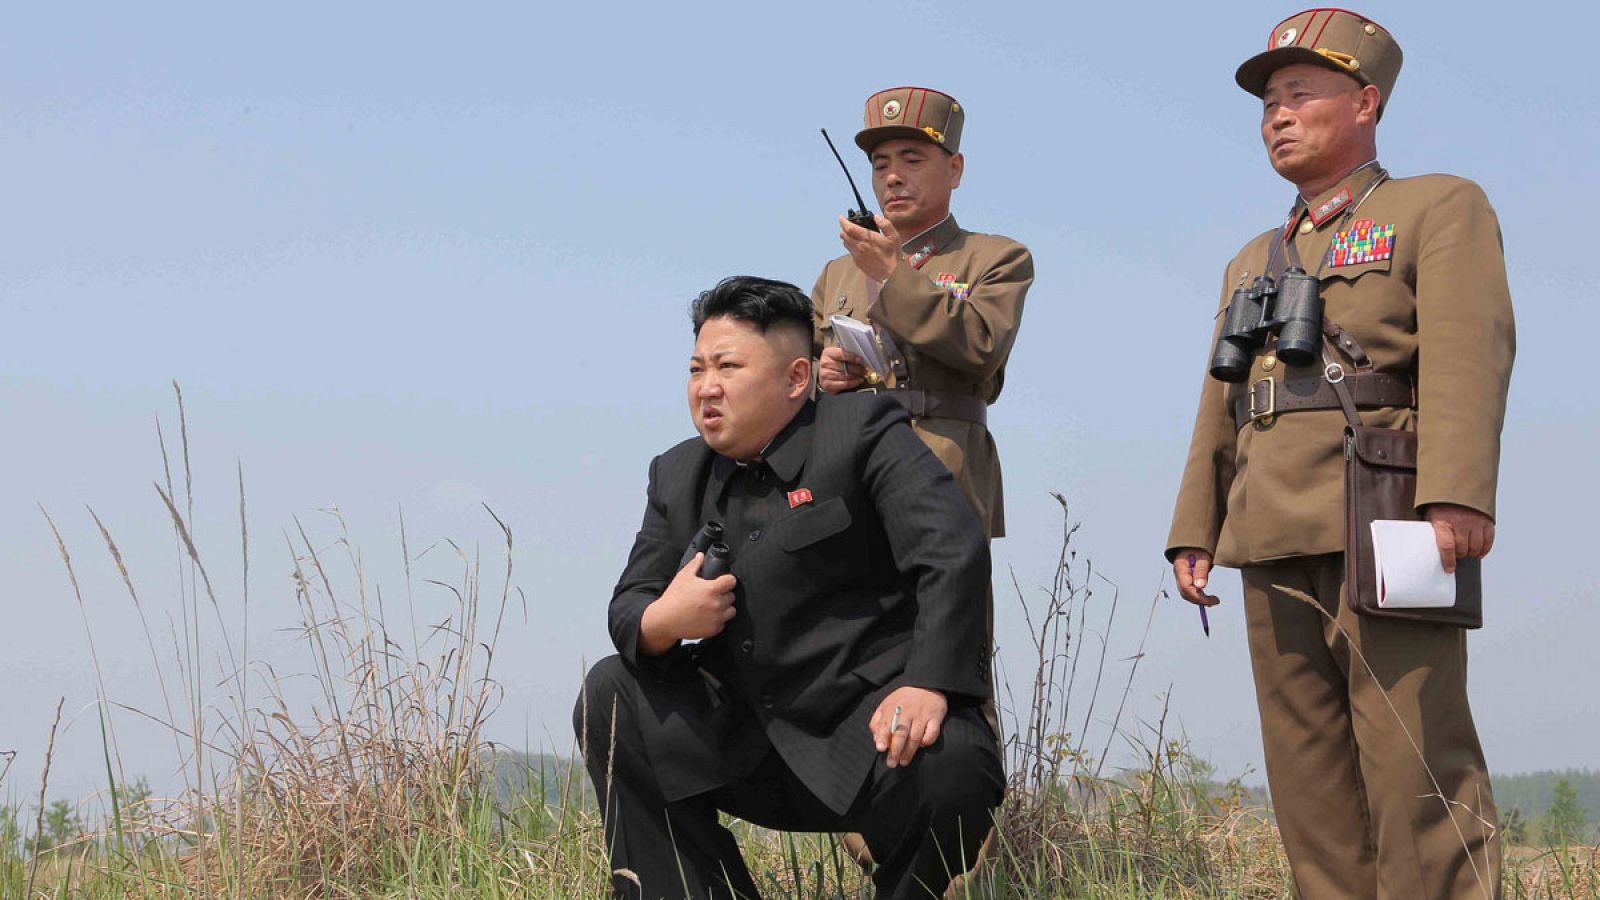 El líder norcoreano, Kim Jong-un, supervisando un lanzamiento de cohetes en una imagen de archivo.